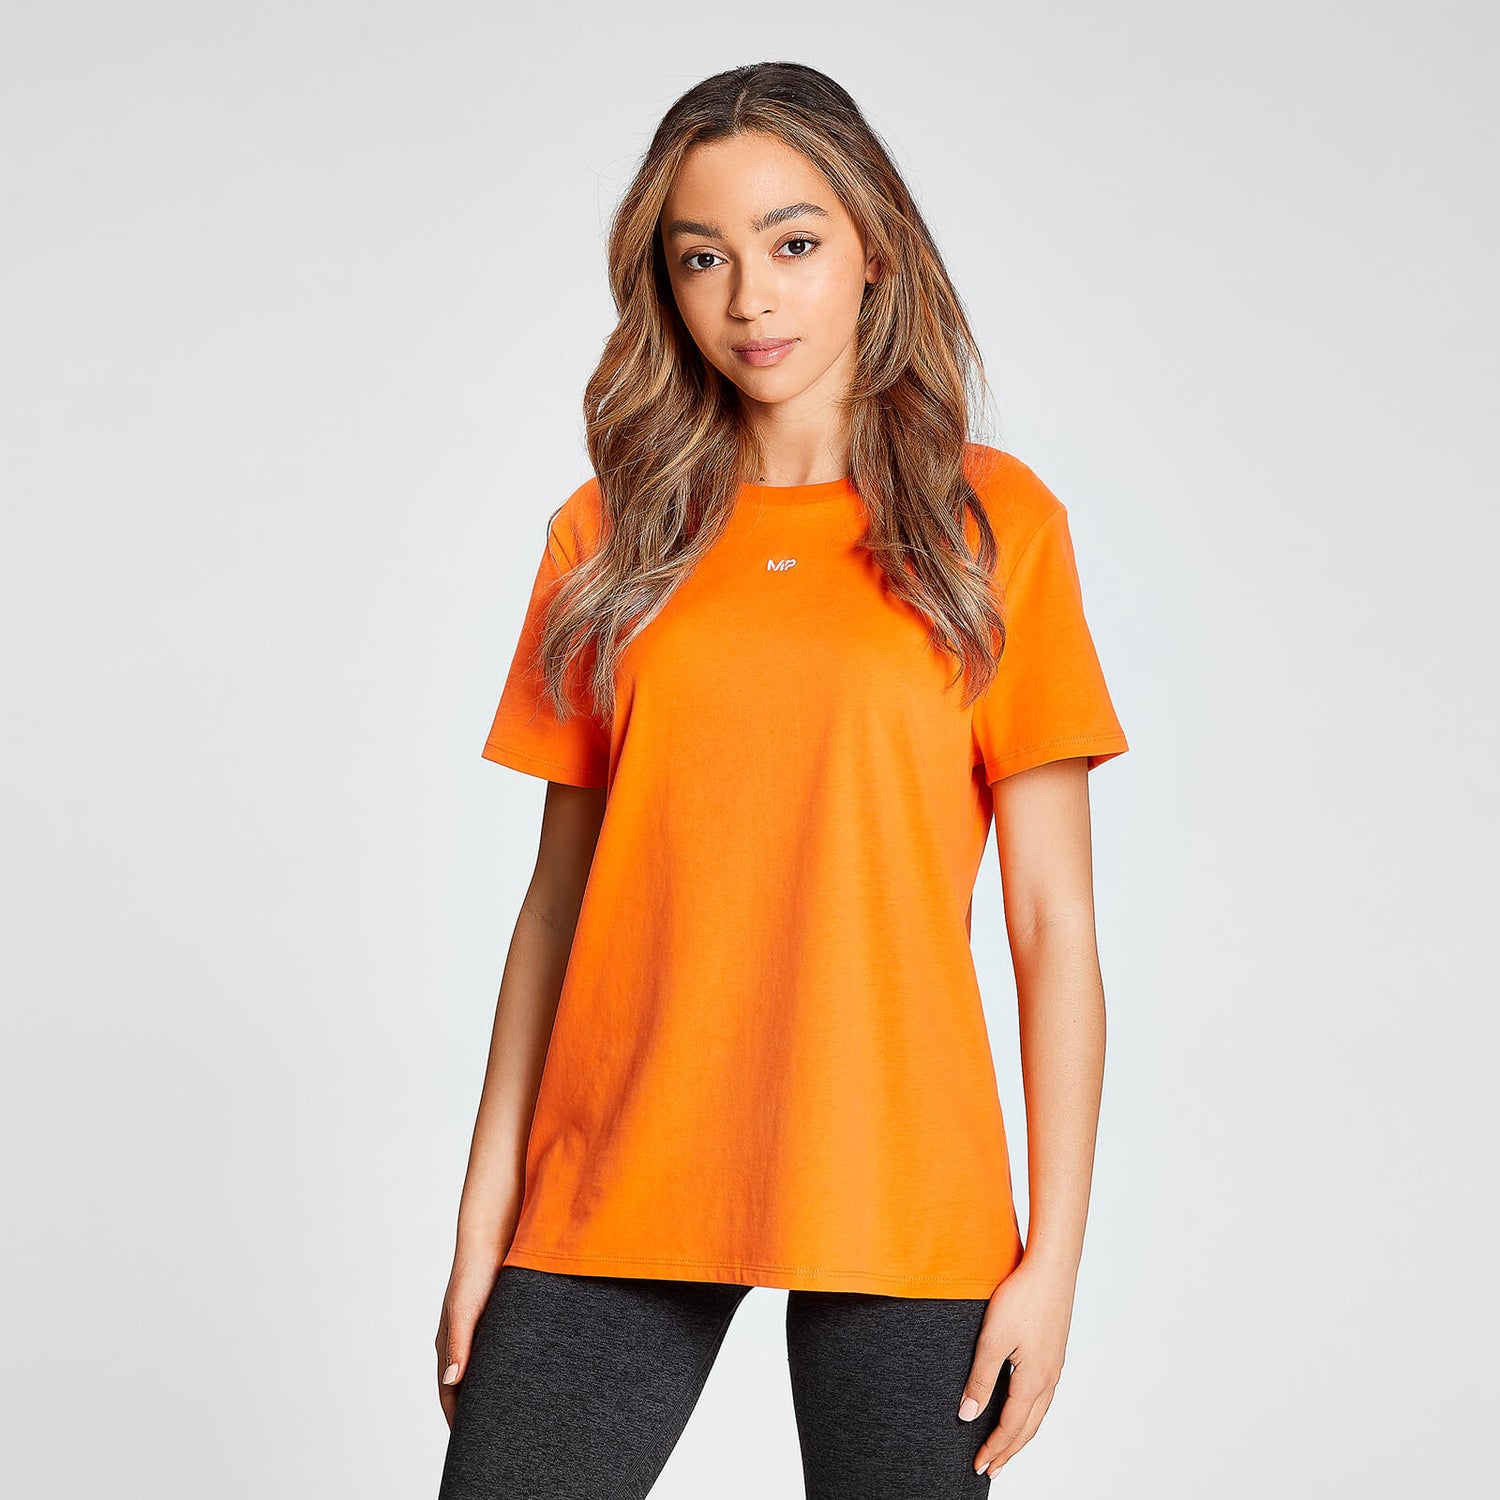 MP Dames Limited Edition Nederland Korte Mouwen T-Shirt - Oranje